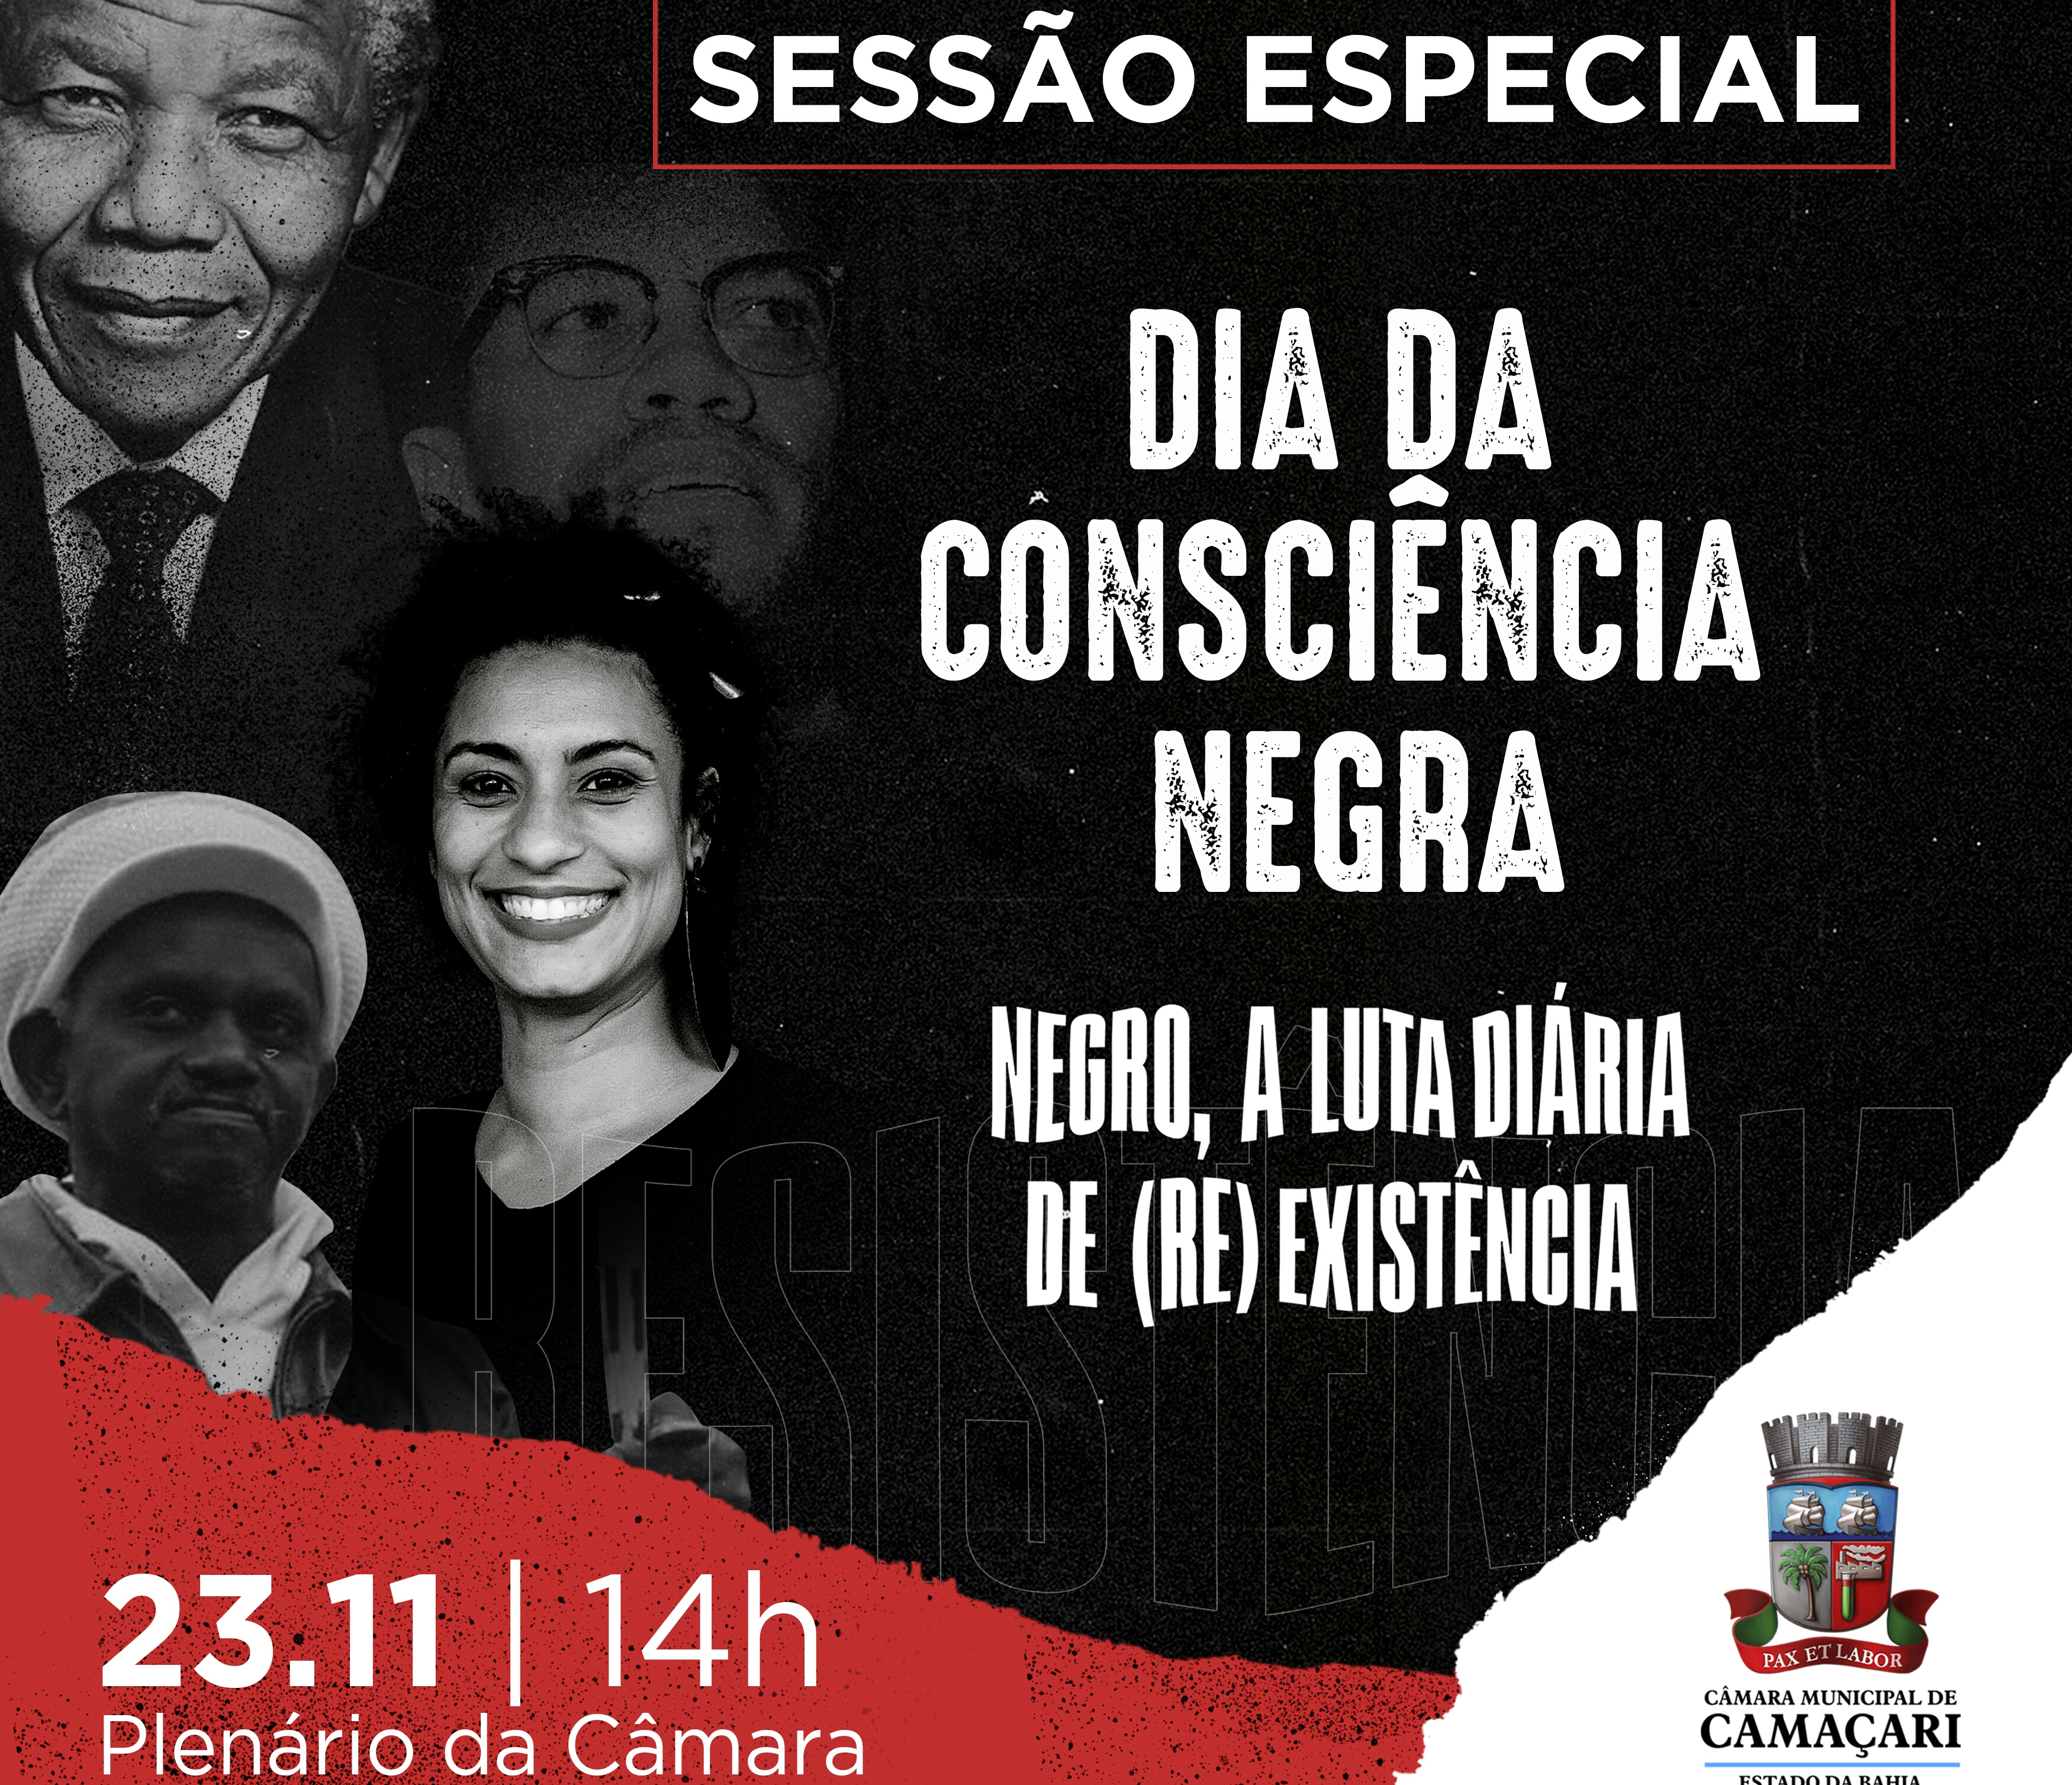 Dia da Consciência Negra será comemorado com Sessão Especial na Câmara nesta sexta (23)